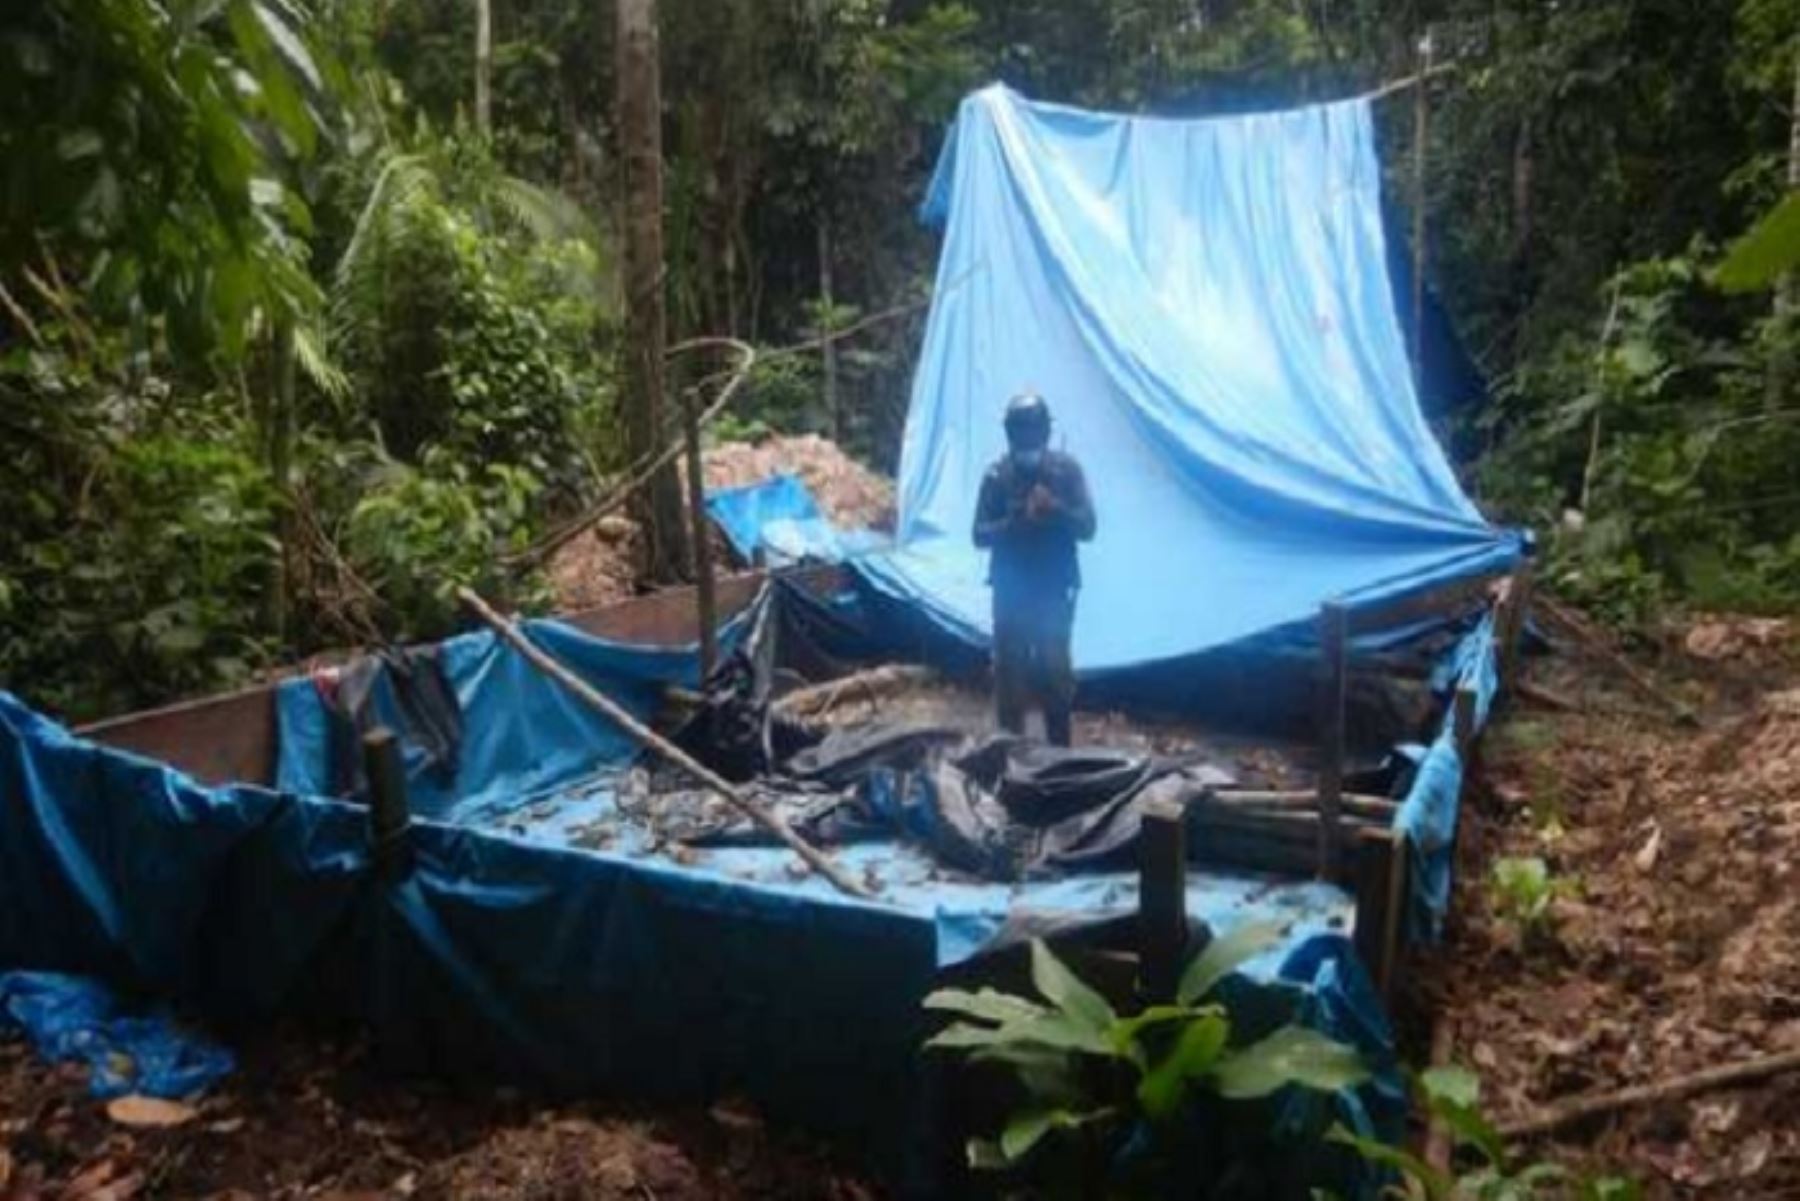 Como parte de esta intervención se destruyó una poza de maceración de cinco metros de ancho, 11 metros de largo y 70 centímetros de altura, donde se habían procesado 2,880 kilos de hoja de coca ilegal.